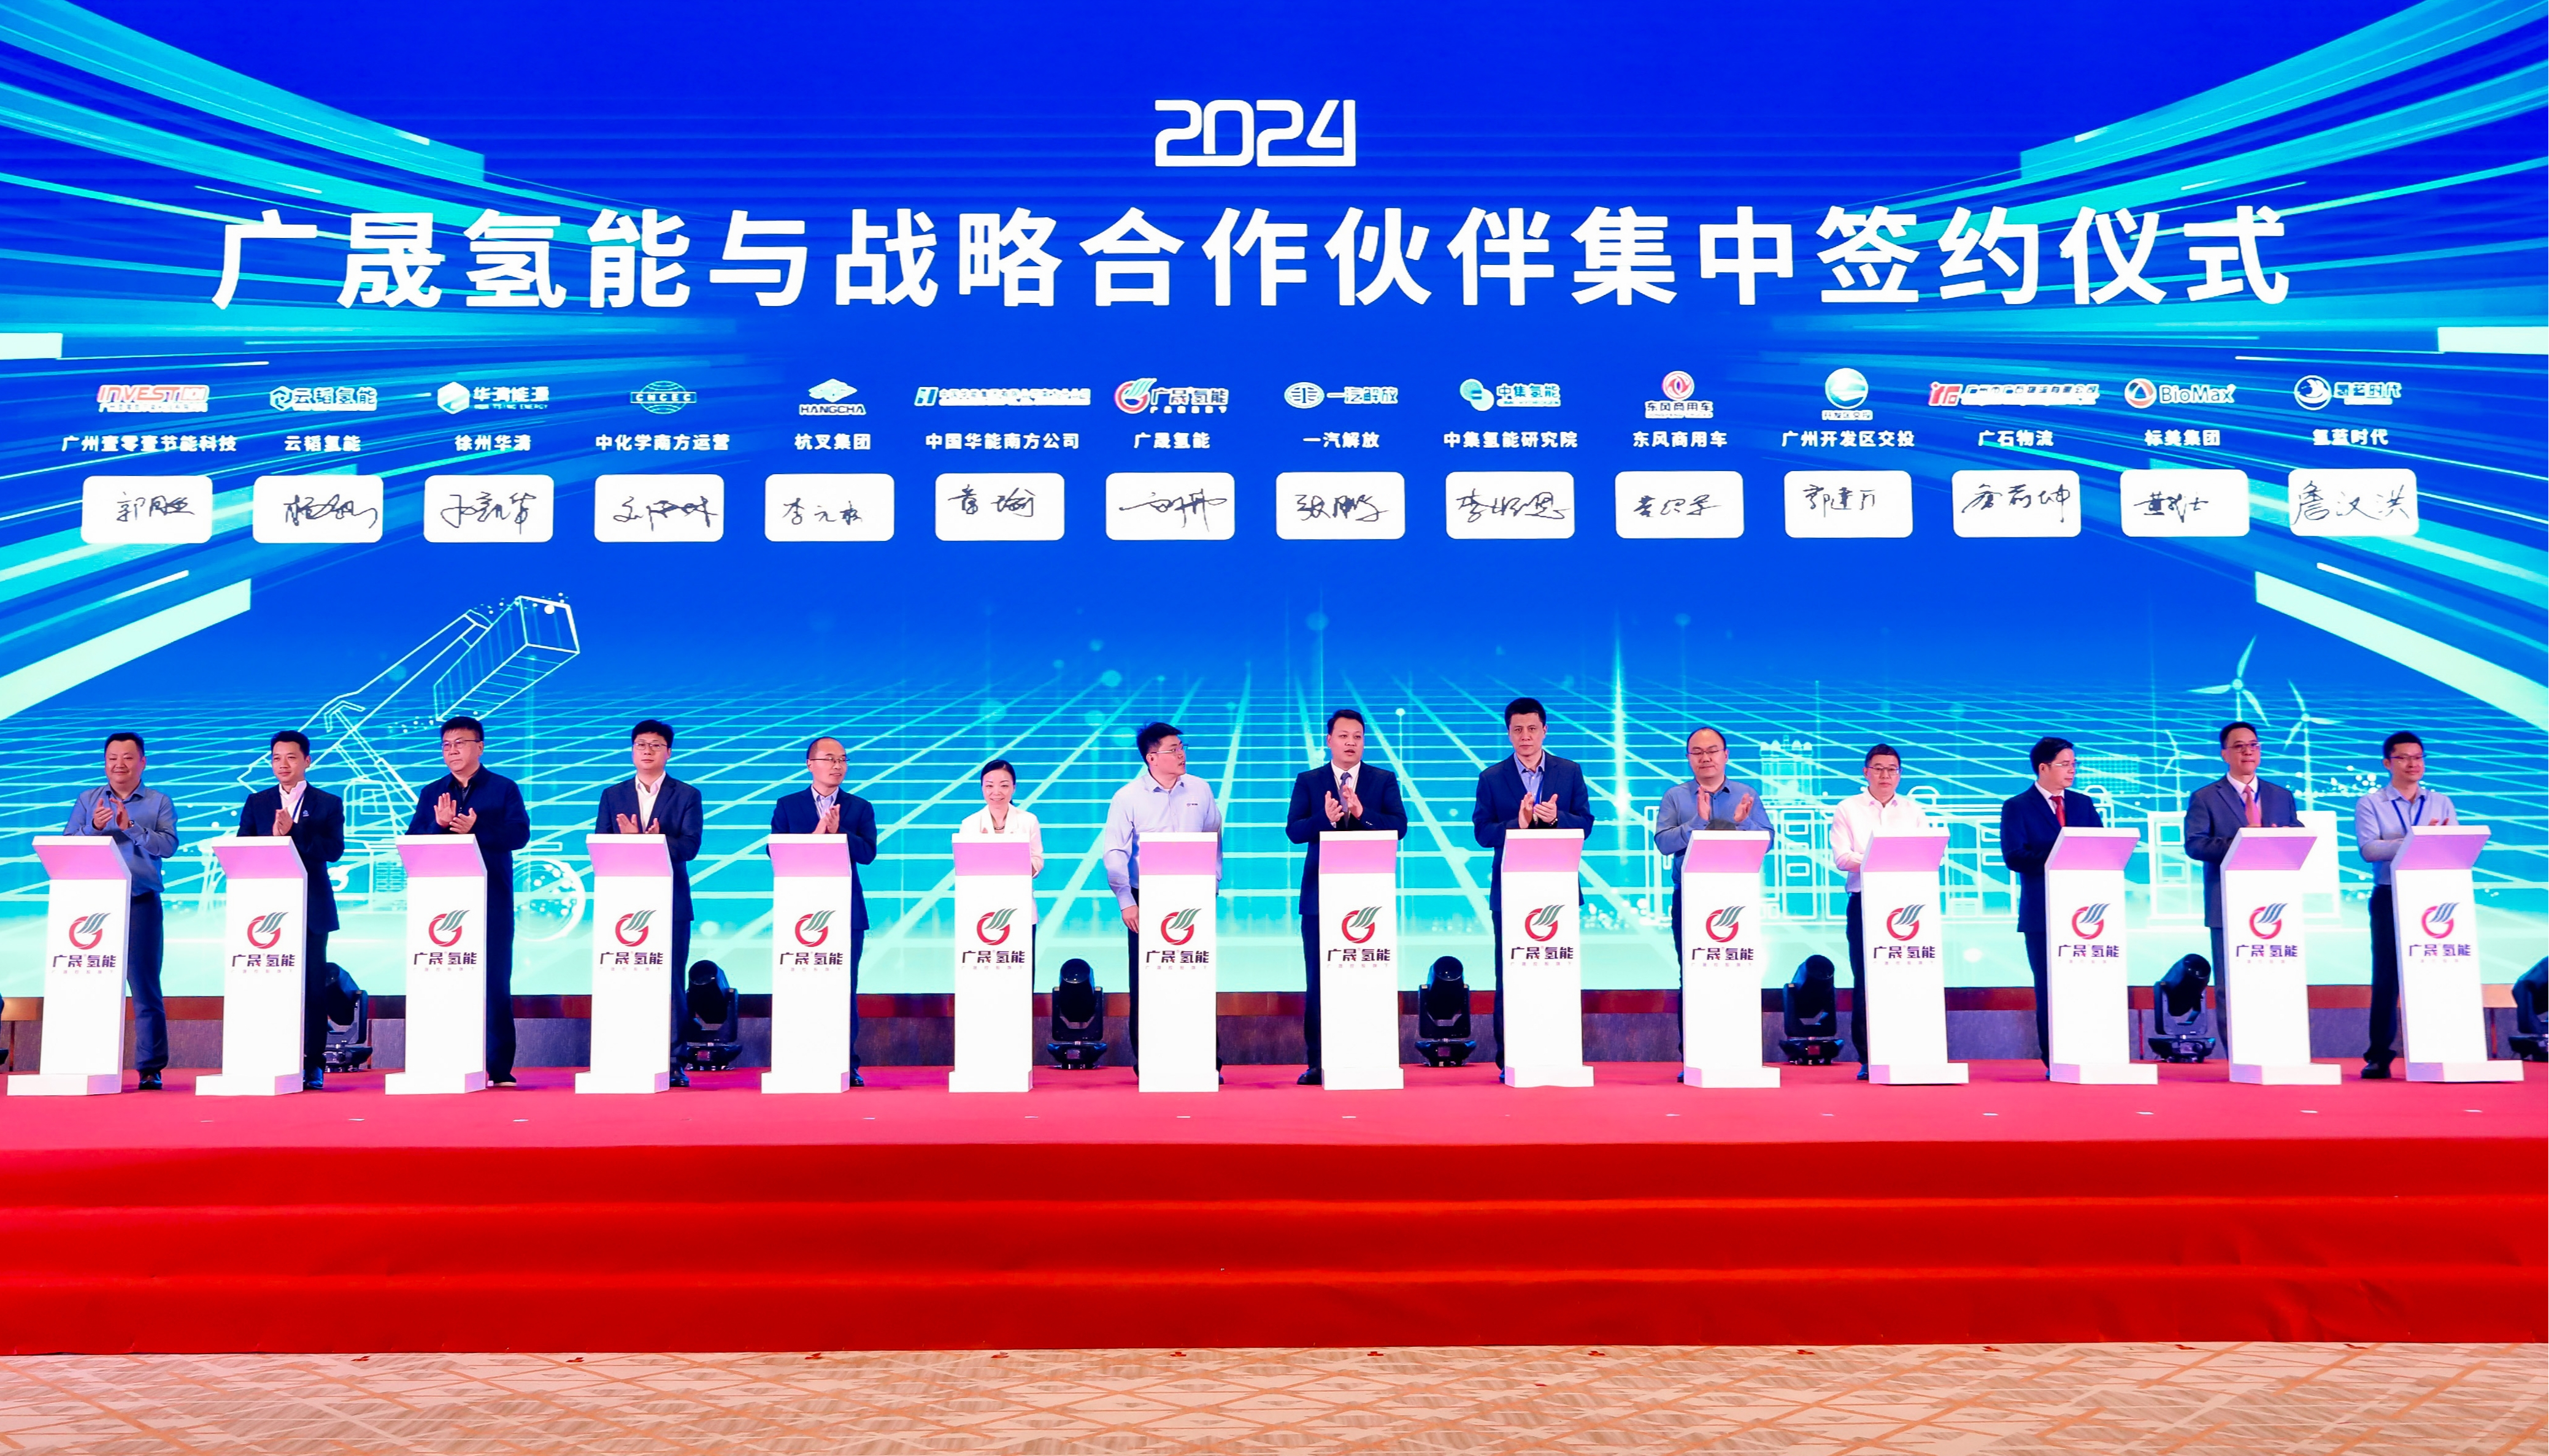 2024年中国能源研究会燃料电池专委会年会在广州举办4